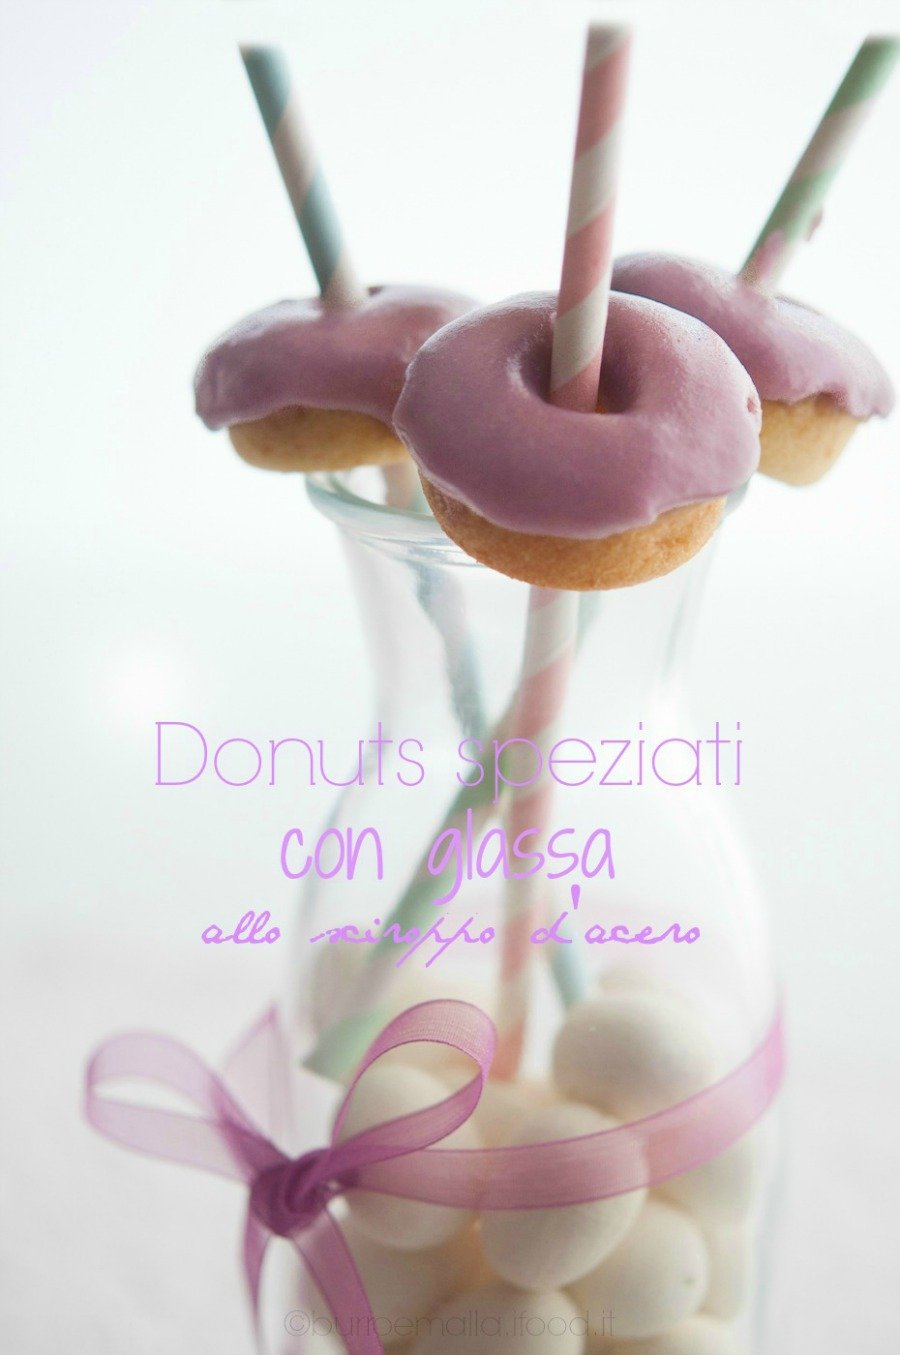 donuts-speziati-con-glassa-allo-sciroppo-di-acero-1